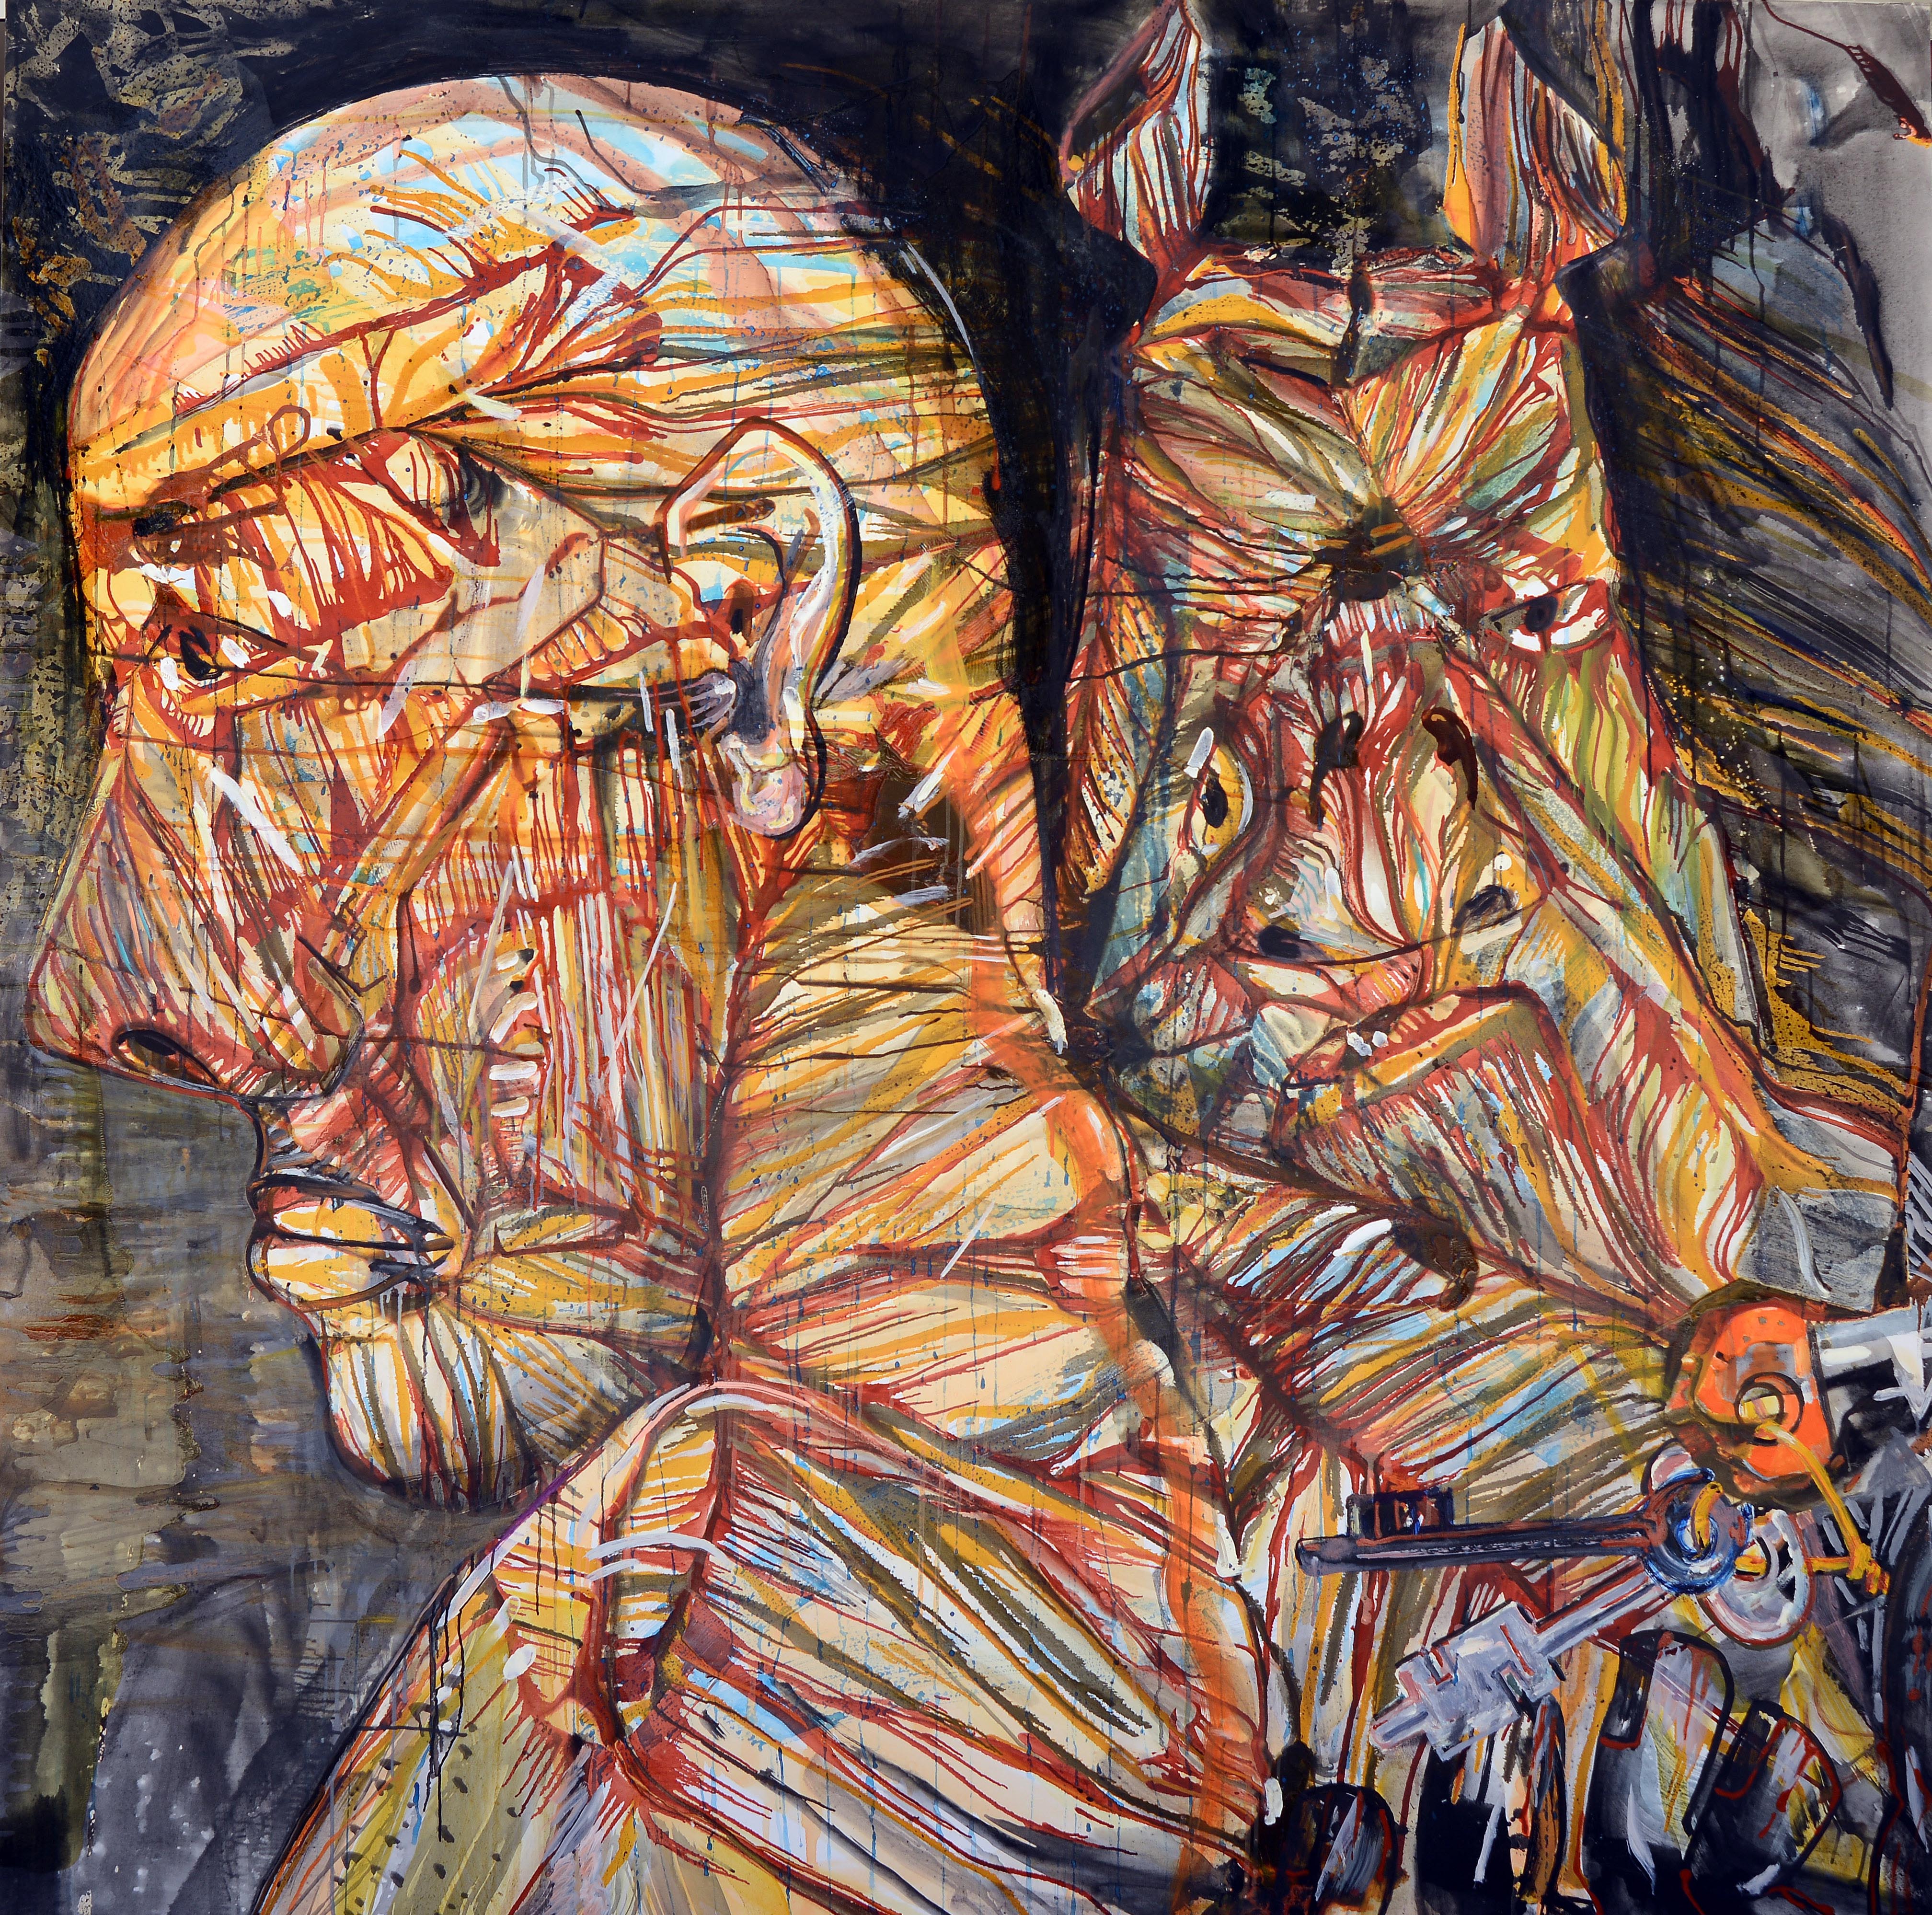 Peter&Paul of the keys, 2013, Tuval üzerine yağlıboya- Oil on canvas, 200x200 cm